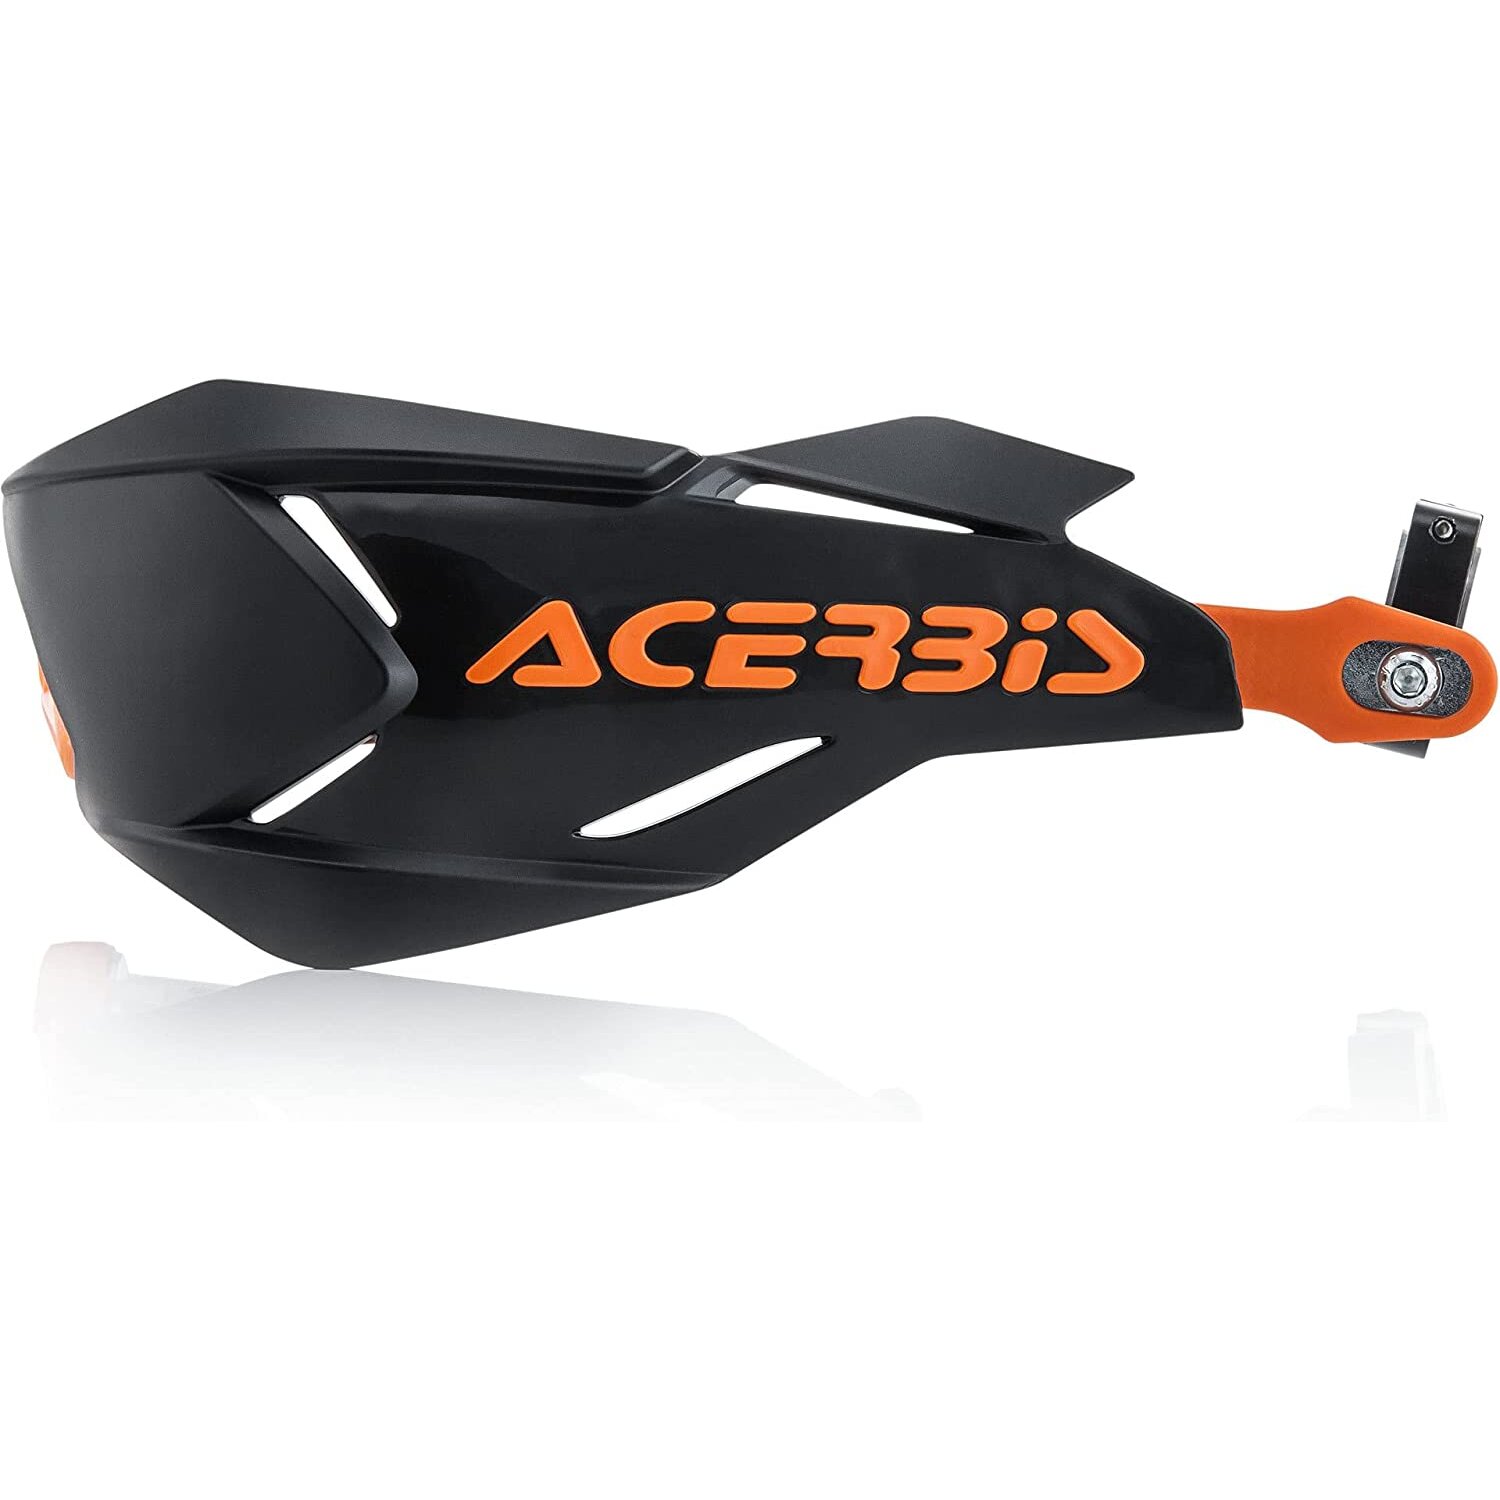 Acerbis 22397.313 Moto Hand Guards, Black/Orange, Size Unifit